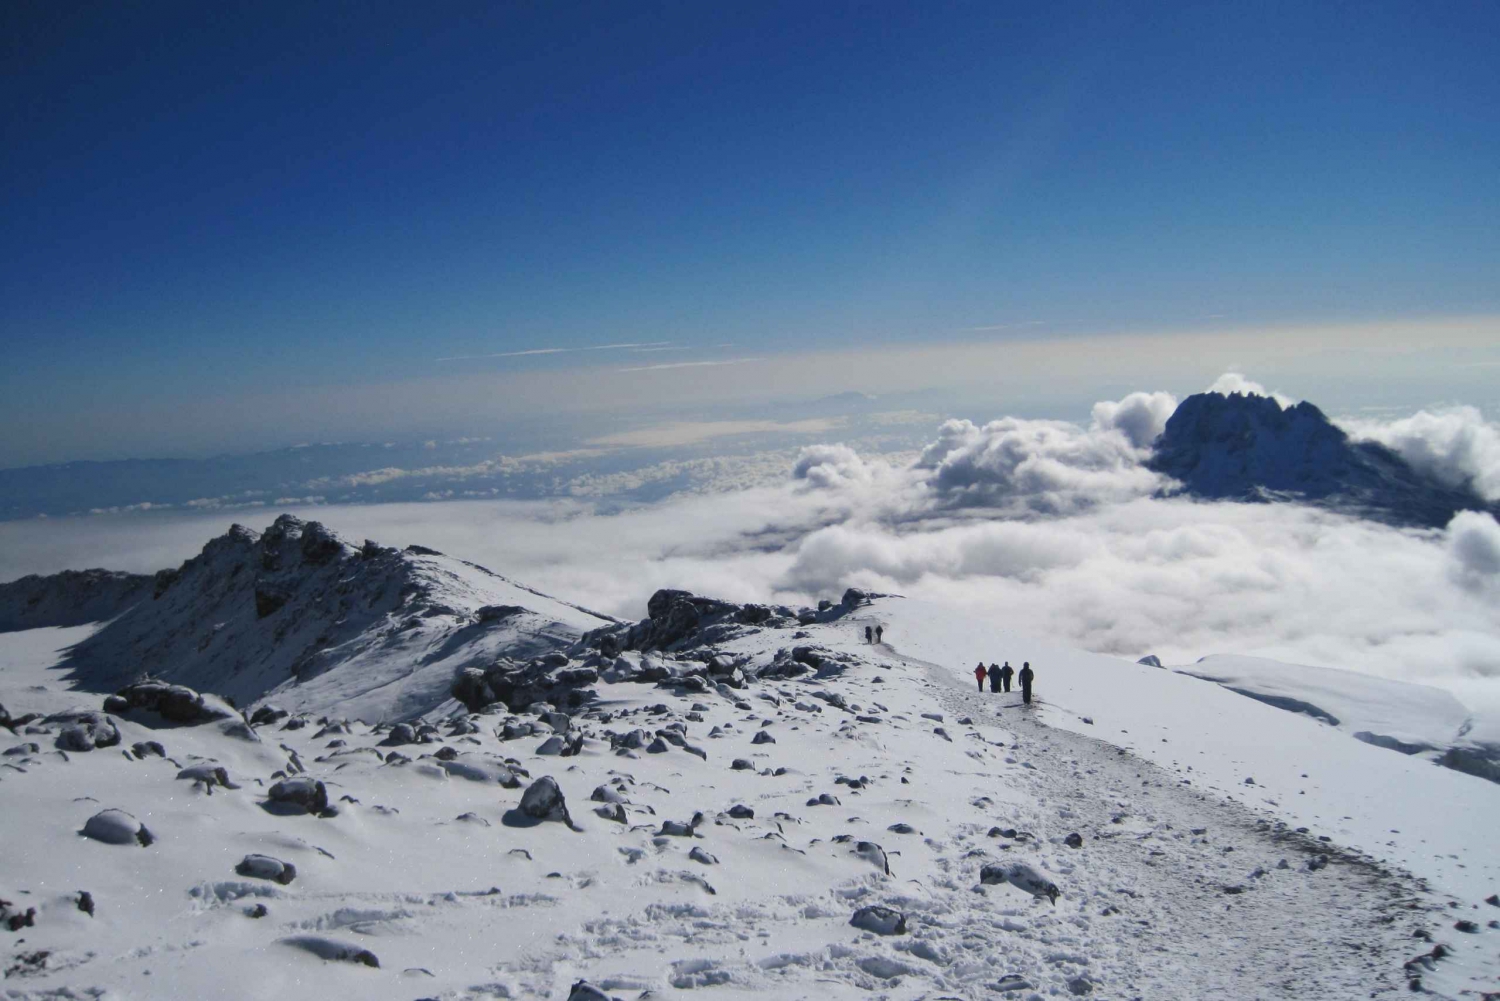 7 dages bestigning af Kilimanjaro ad Lemosho-ruten